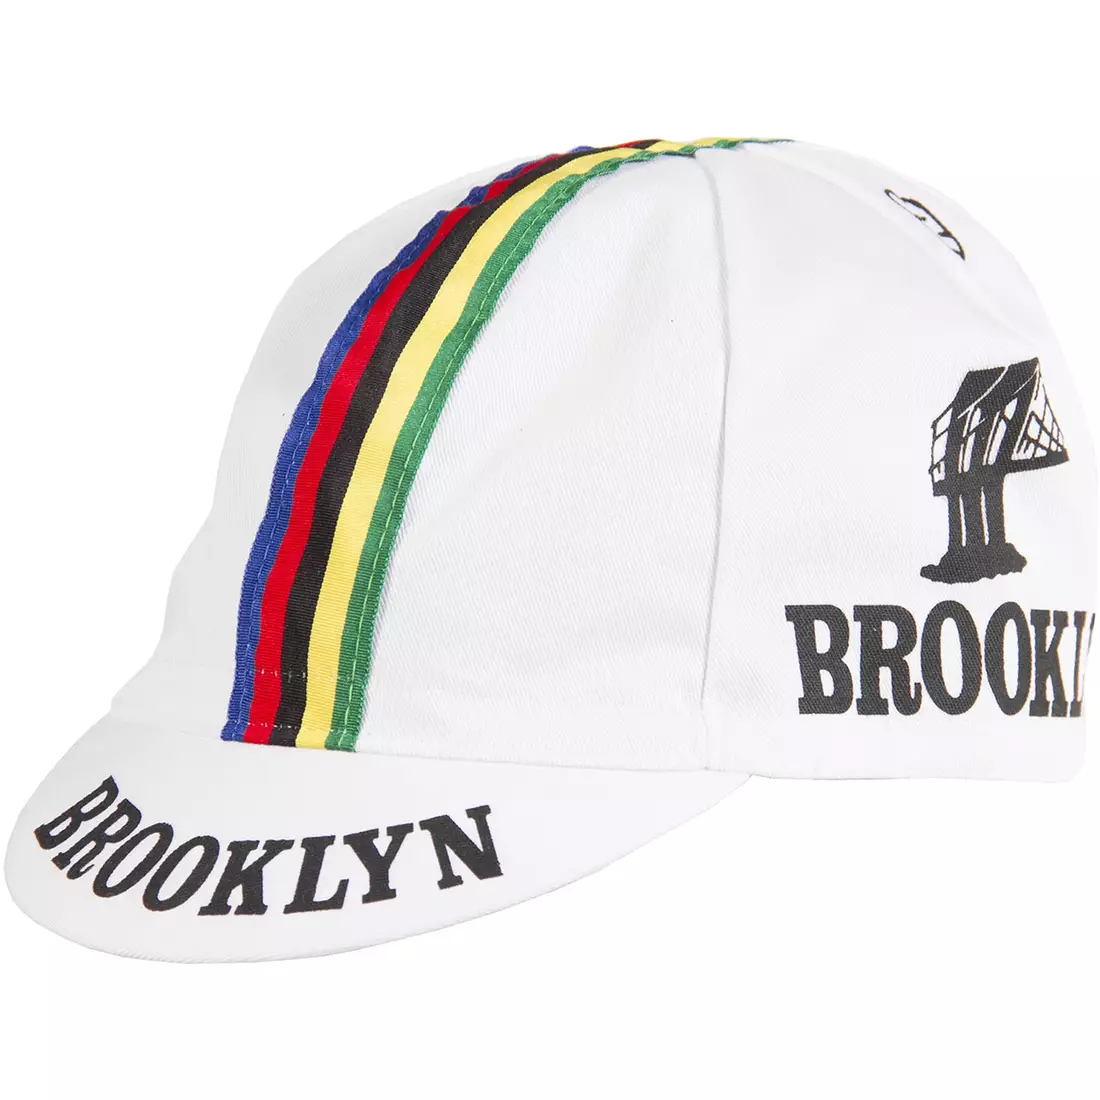 Cyklistická čepice GIORDANA SS18 - Brooklyn - Bílá s páskou GI-S6-COCA-BROK-WHIT jedna velikost